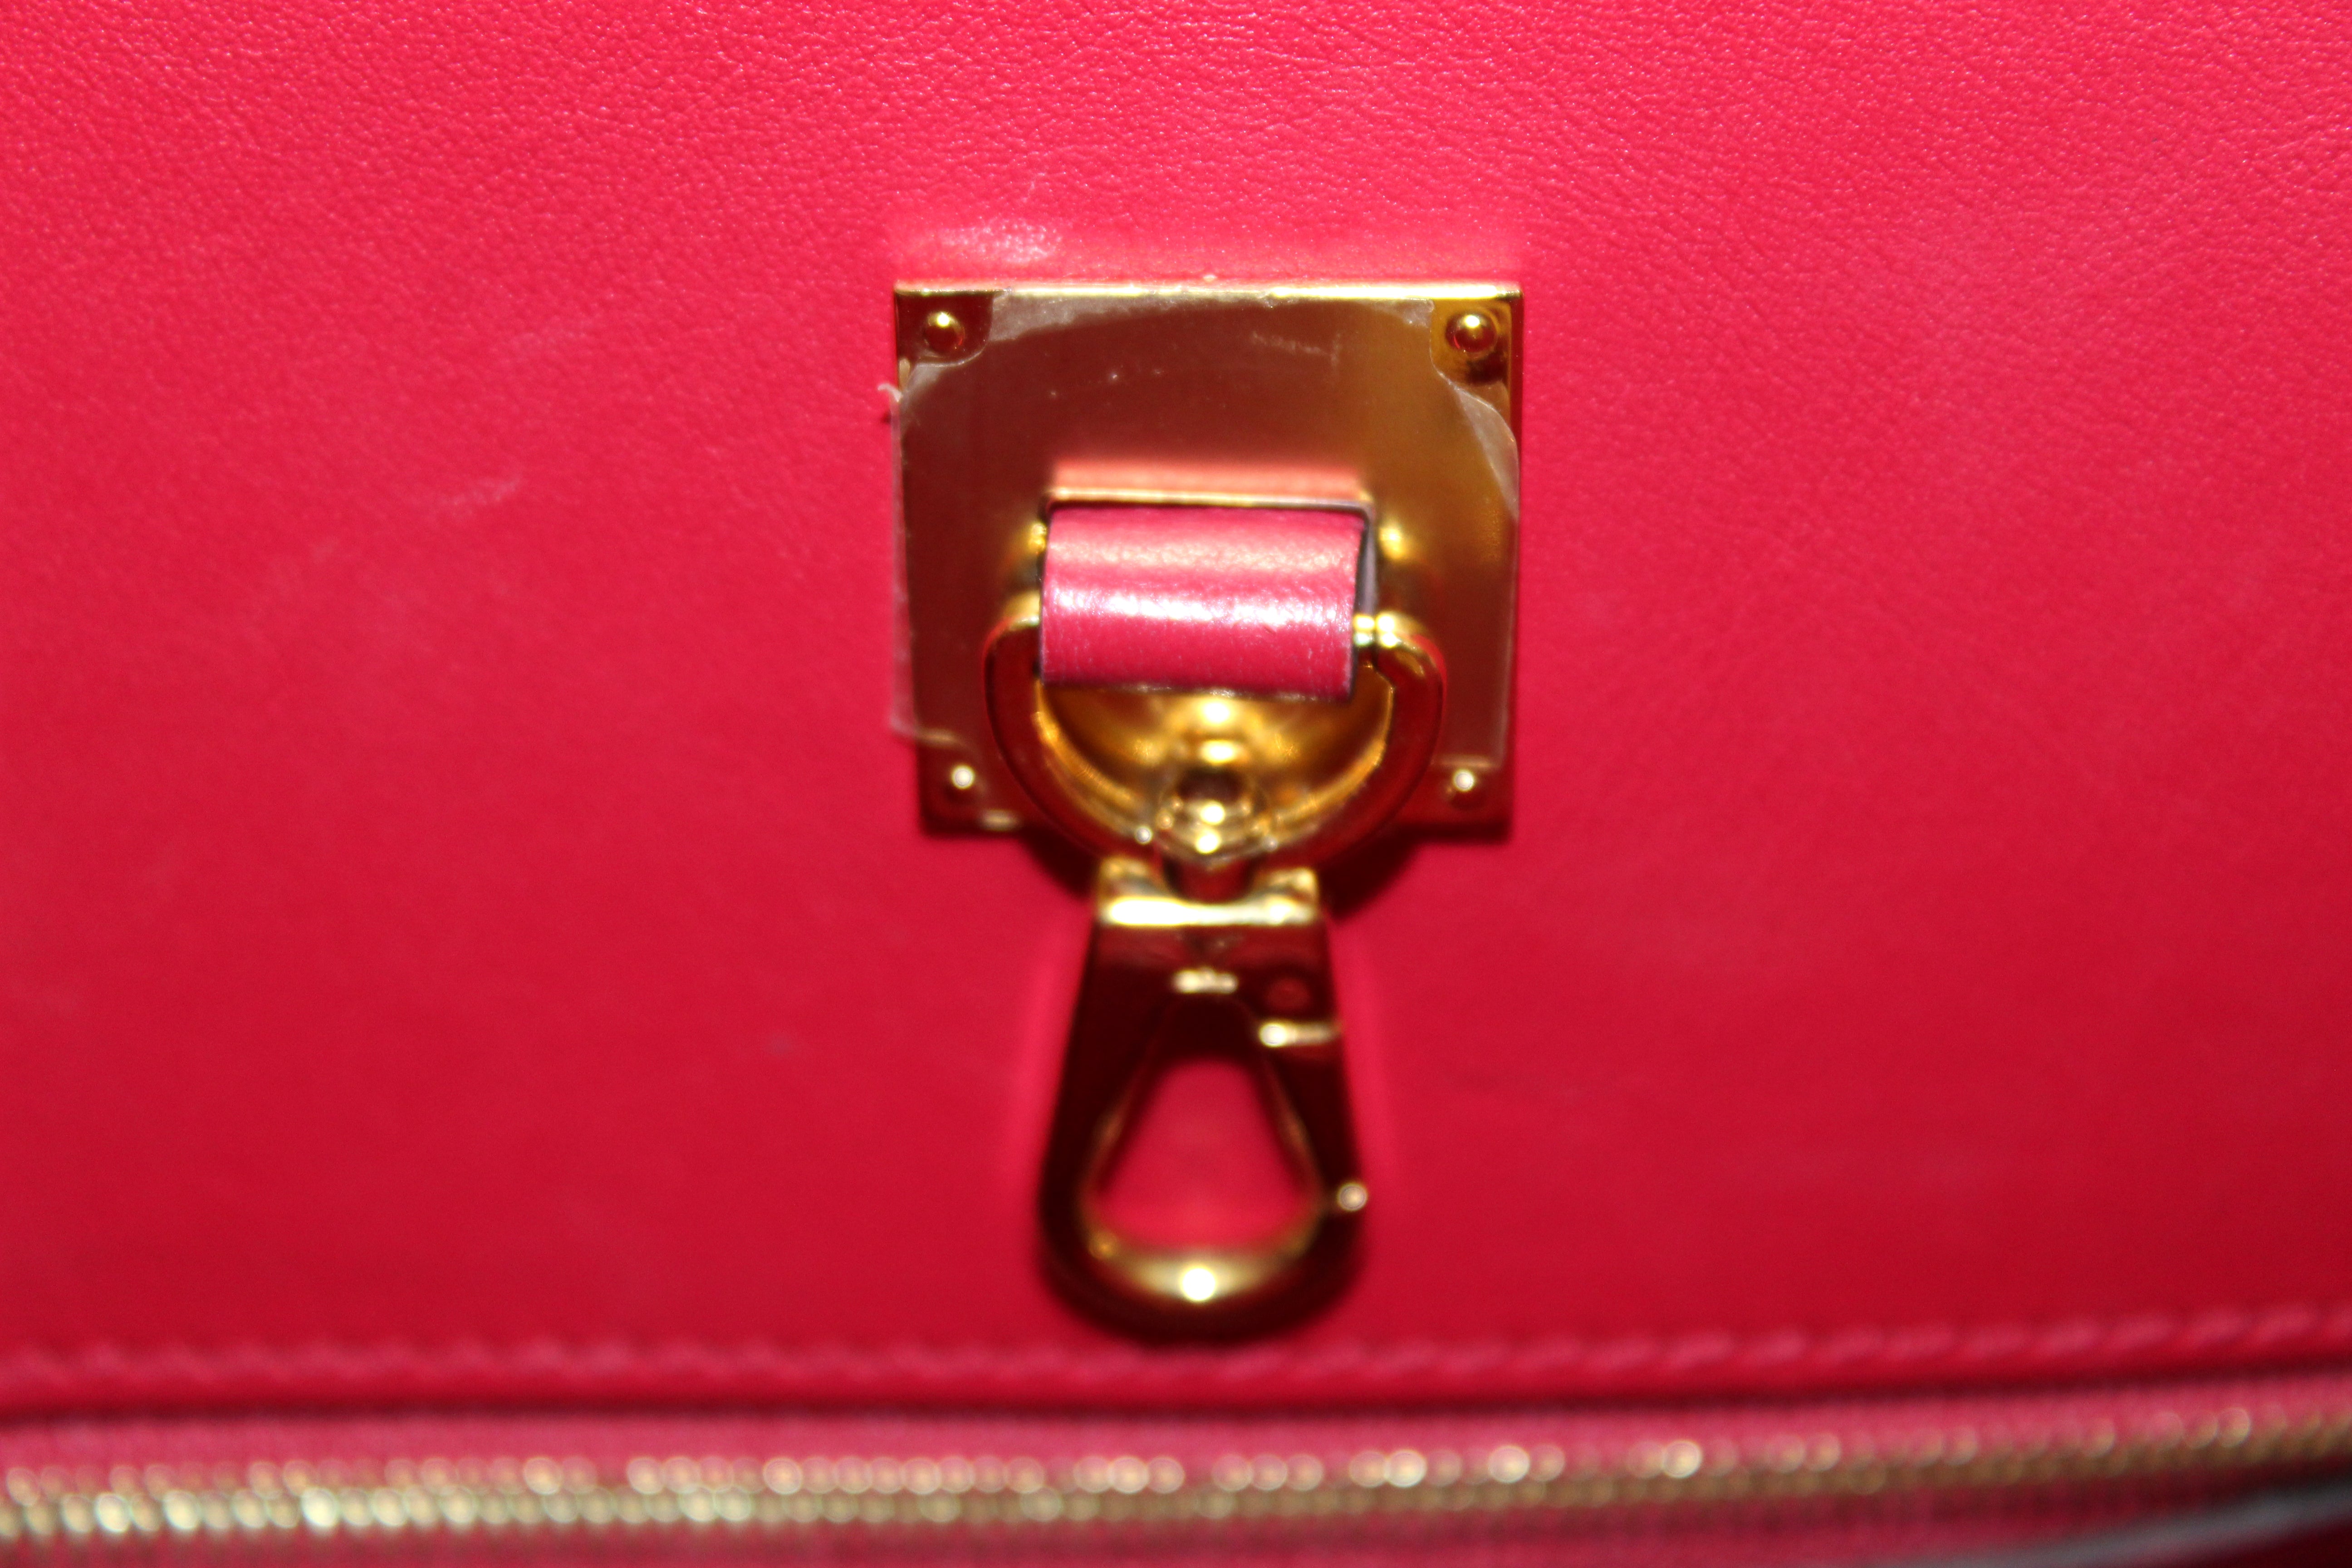 Louis Vuitton Veau Nuage Milla PM w/ Strap - Neutrals Handle Bags, Handbags  - LOU725038